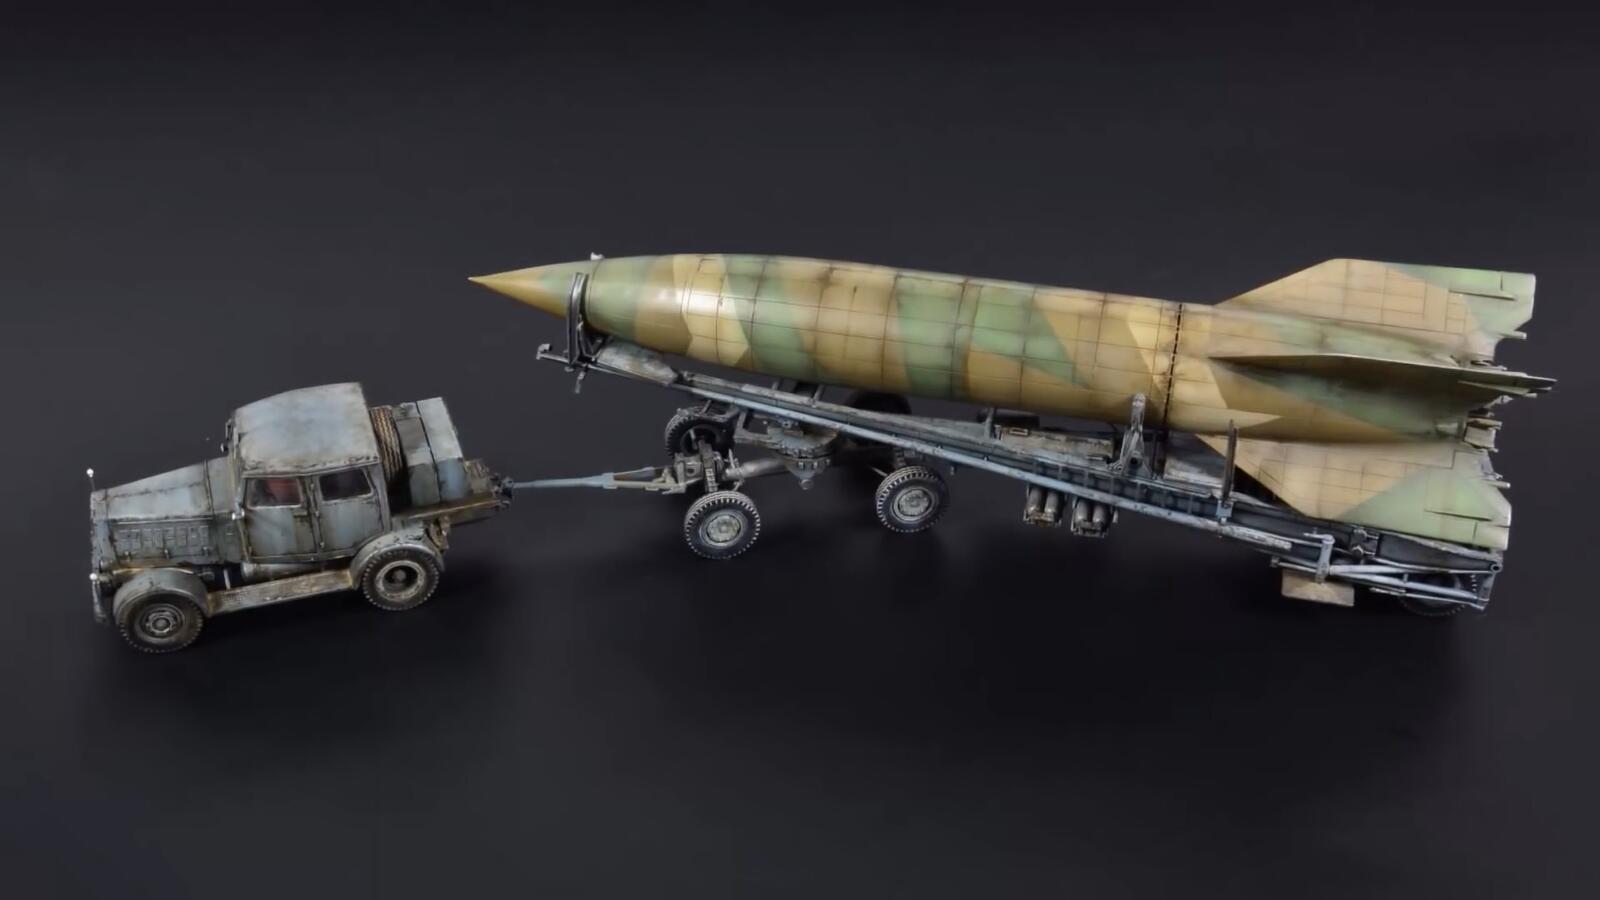 二战德国v-2导弹模型,牵引车神还原十分出彩,霸气非凡!